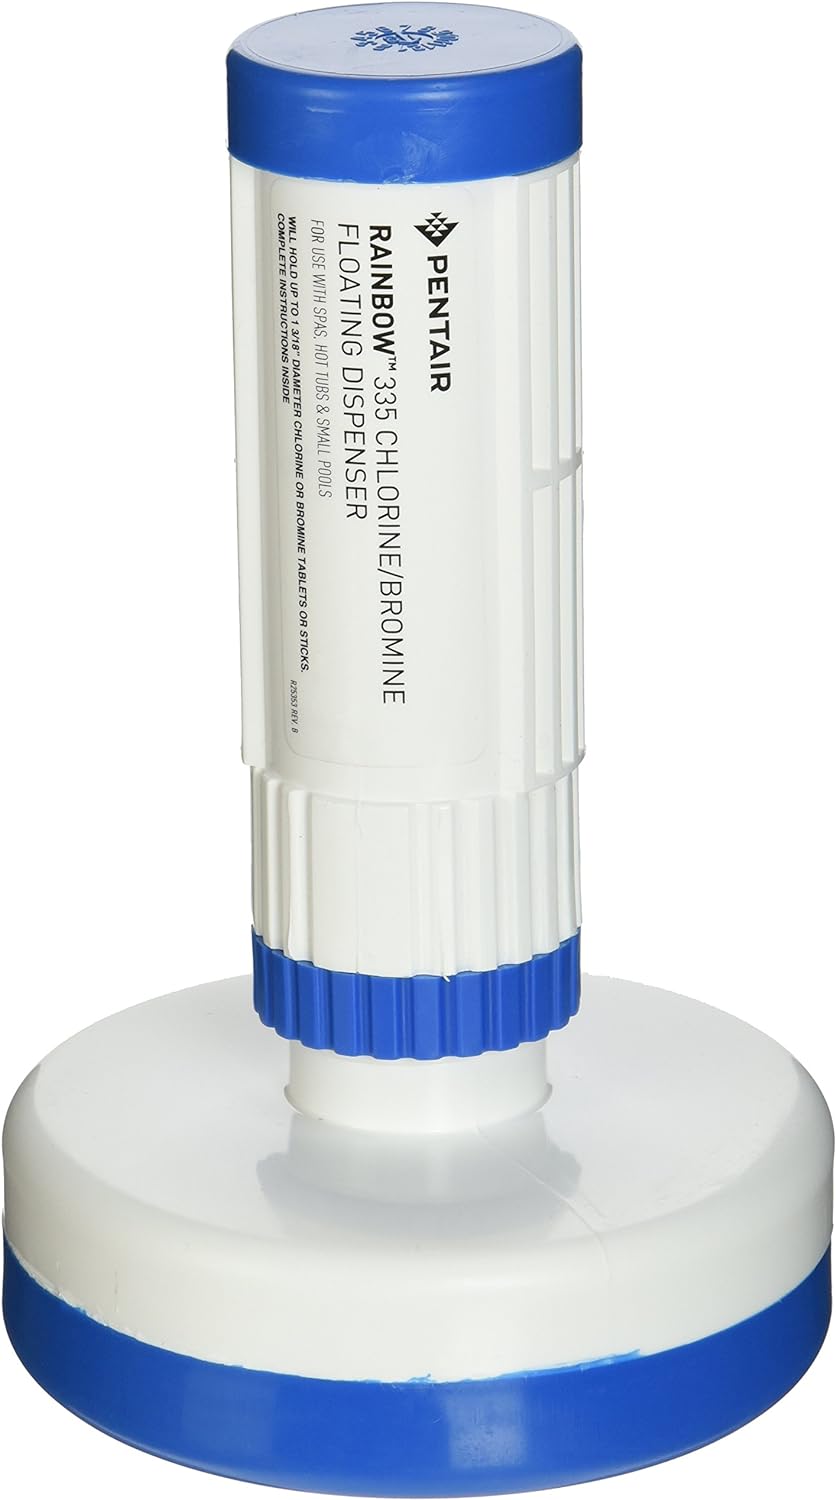 Pentair Chlorine/Bromine Floating Dispenser (Blue & White) || R171074